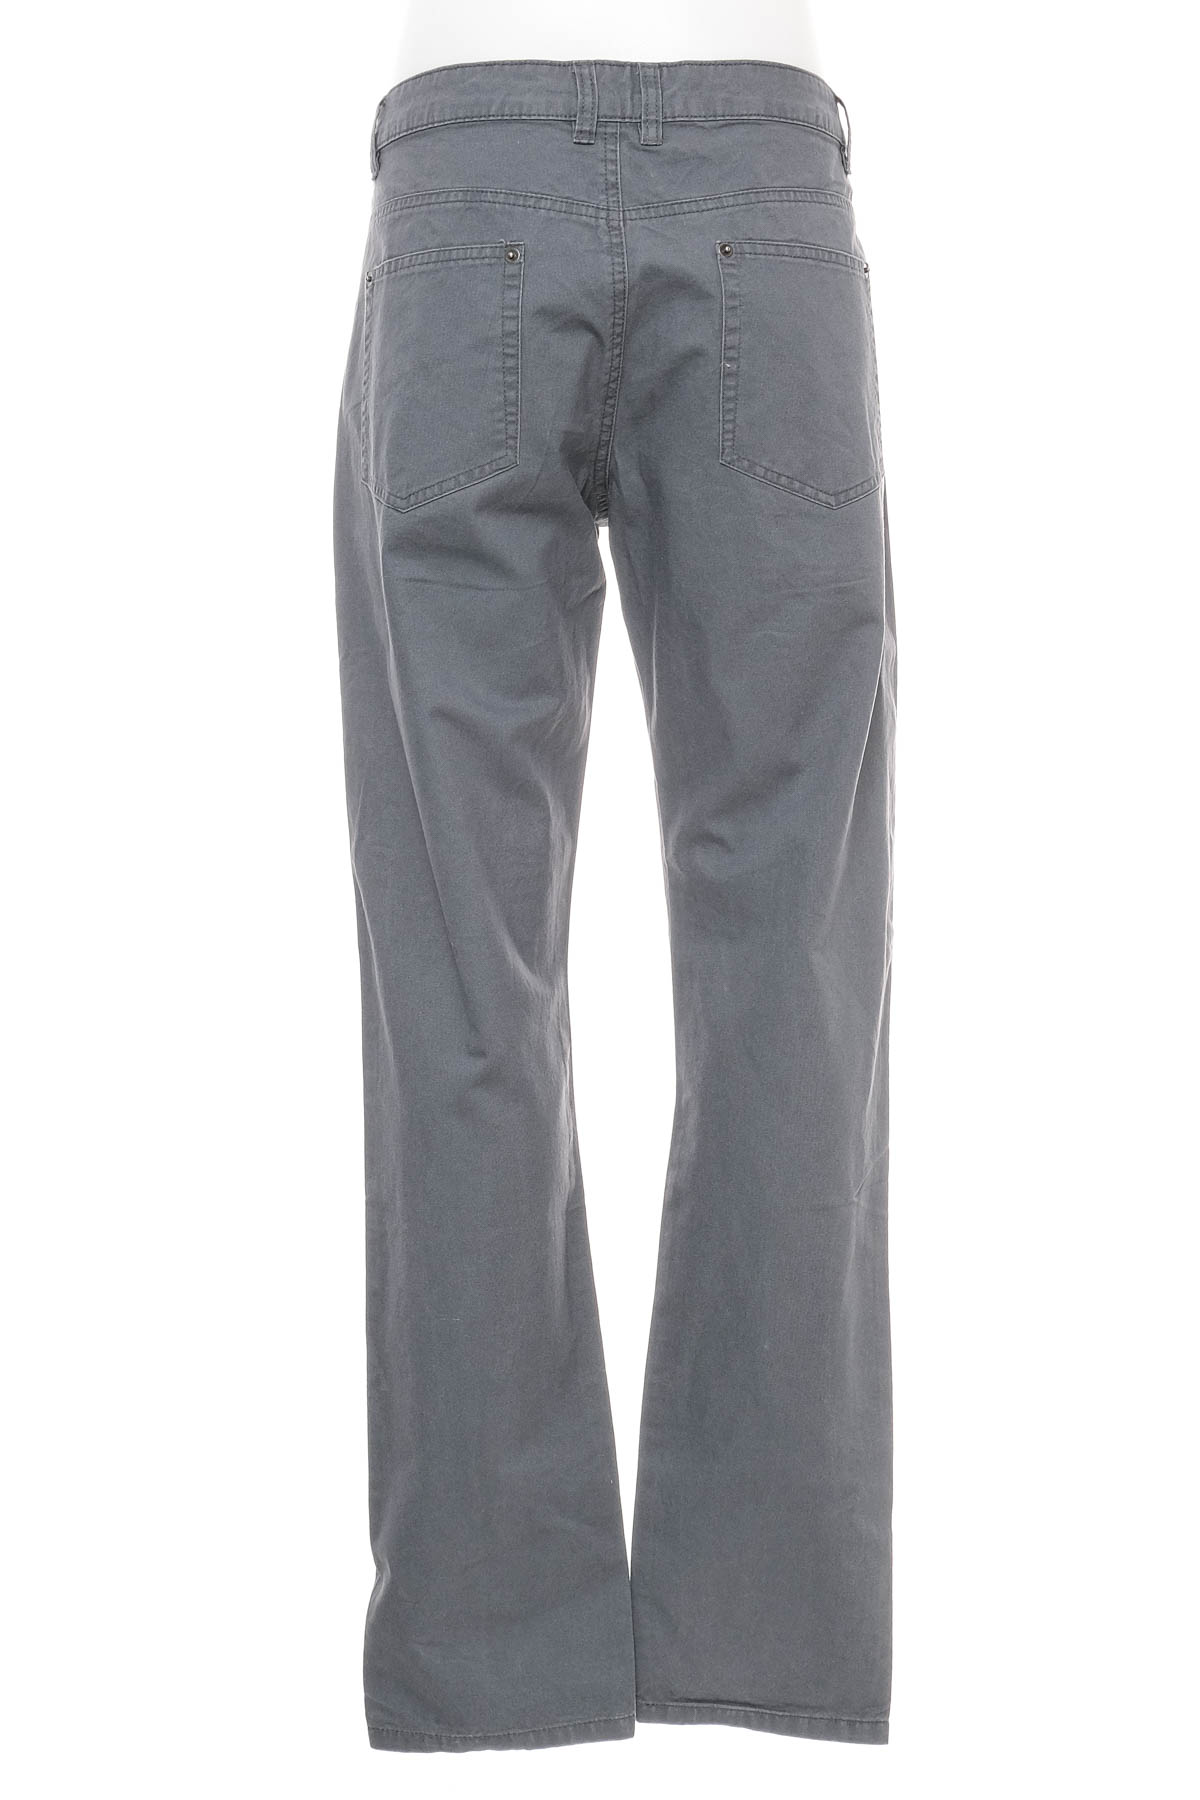 Men's trousers - Staple Superior - 1